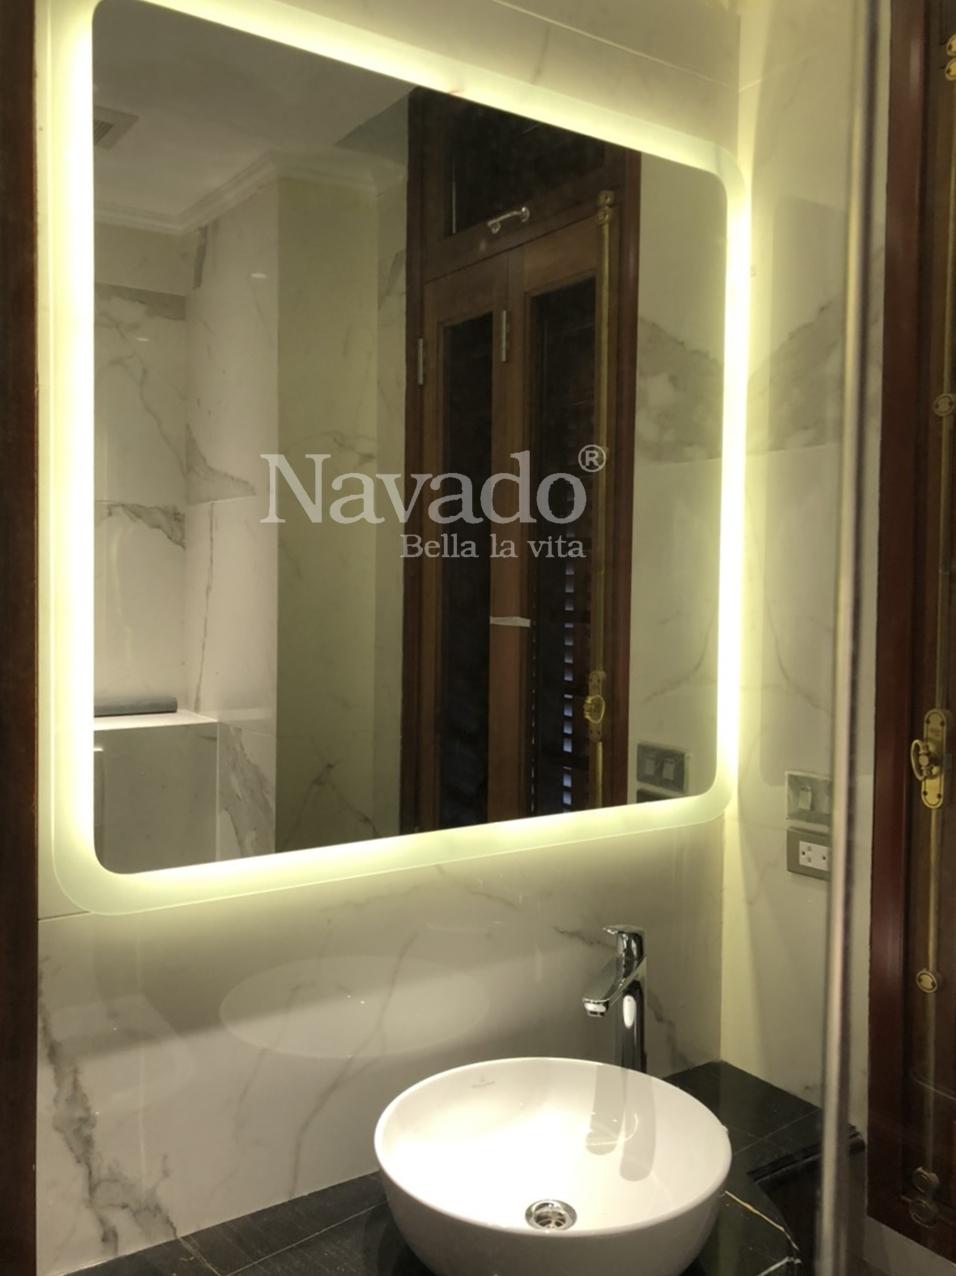 Gương phòng tắm led Thanh Hóa Navado 2024: Với sản phẩm gương phòng tắm led Thanh Hóa 2024, Navado mang đến cho bạn một không gian tắm xả stress, đầy đủ tiện nghi và hiện đại. Với ánh sáng led dịu nhẹ, độ bền cao và thiết kế đa dạng, gương phòng tắm led Thanh Hóa của Navado sẽ là người bạn đồng hành đắc lực của bạn.